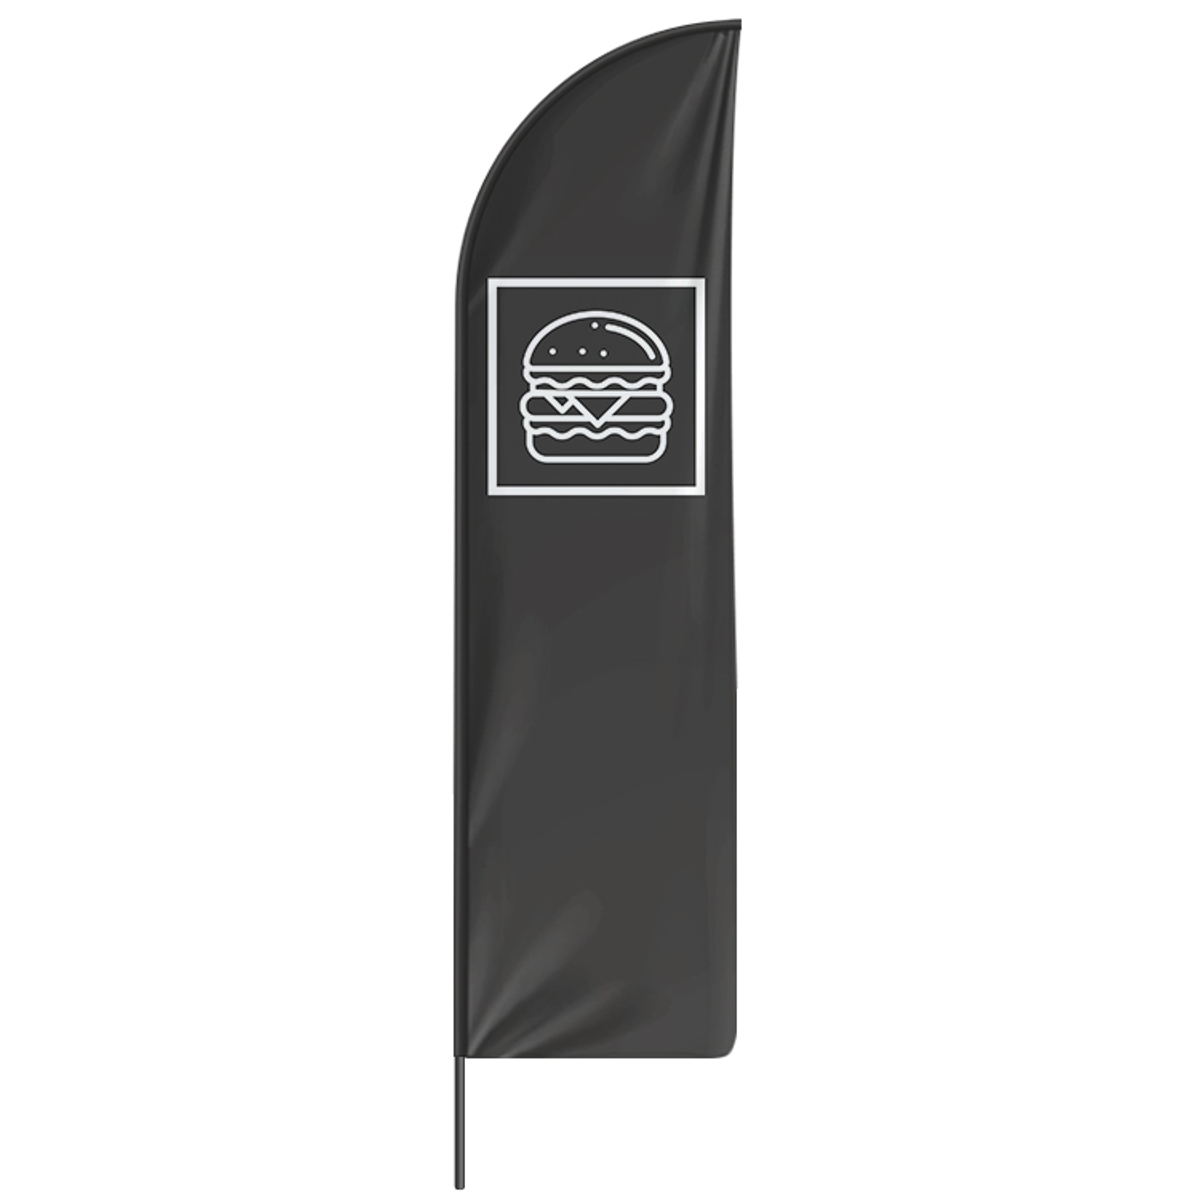 Beachflag Burger - 3 Modelle - 4 Größen